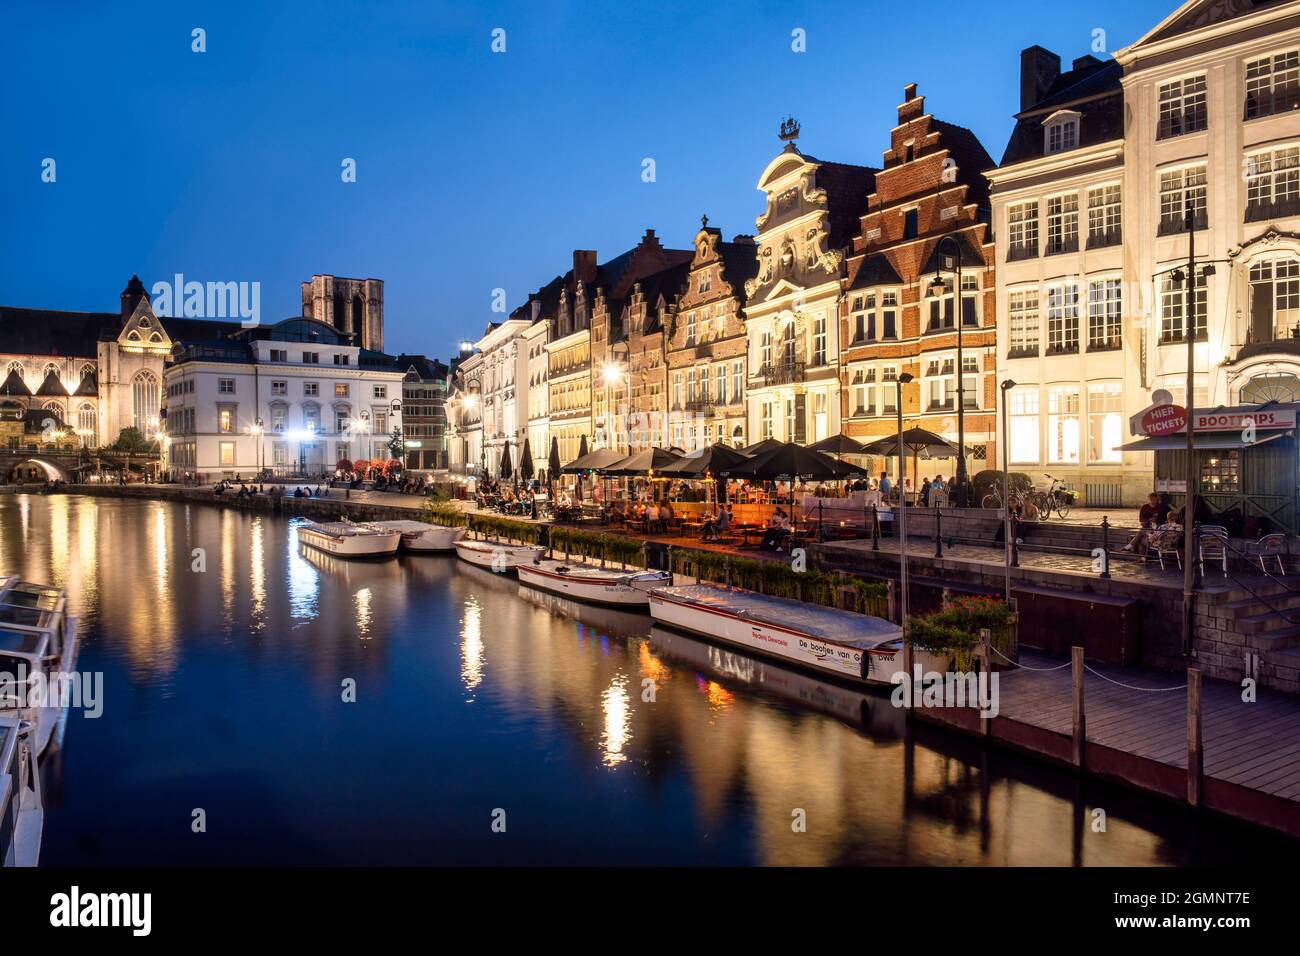 Historisches Zentrum von Gent am Abend,    mittelalterliche Häuser, Korenlei Ufer Promenade, Ausflugsboote, Gent, Flandern, Belgien, Europa Stock Photo